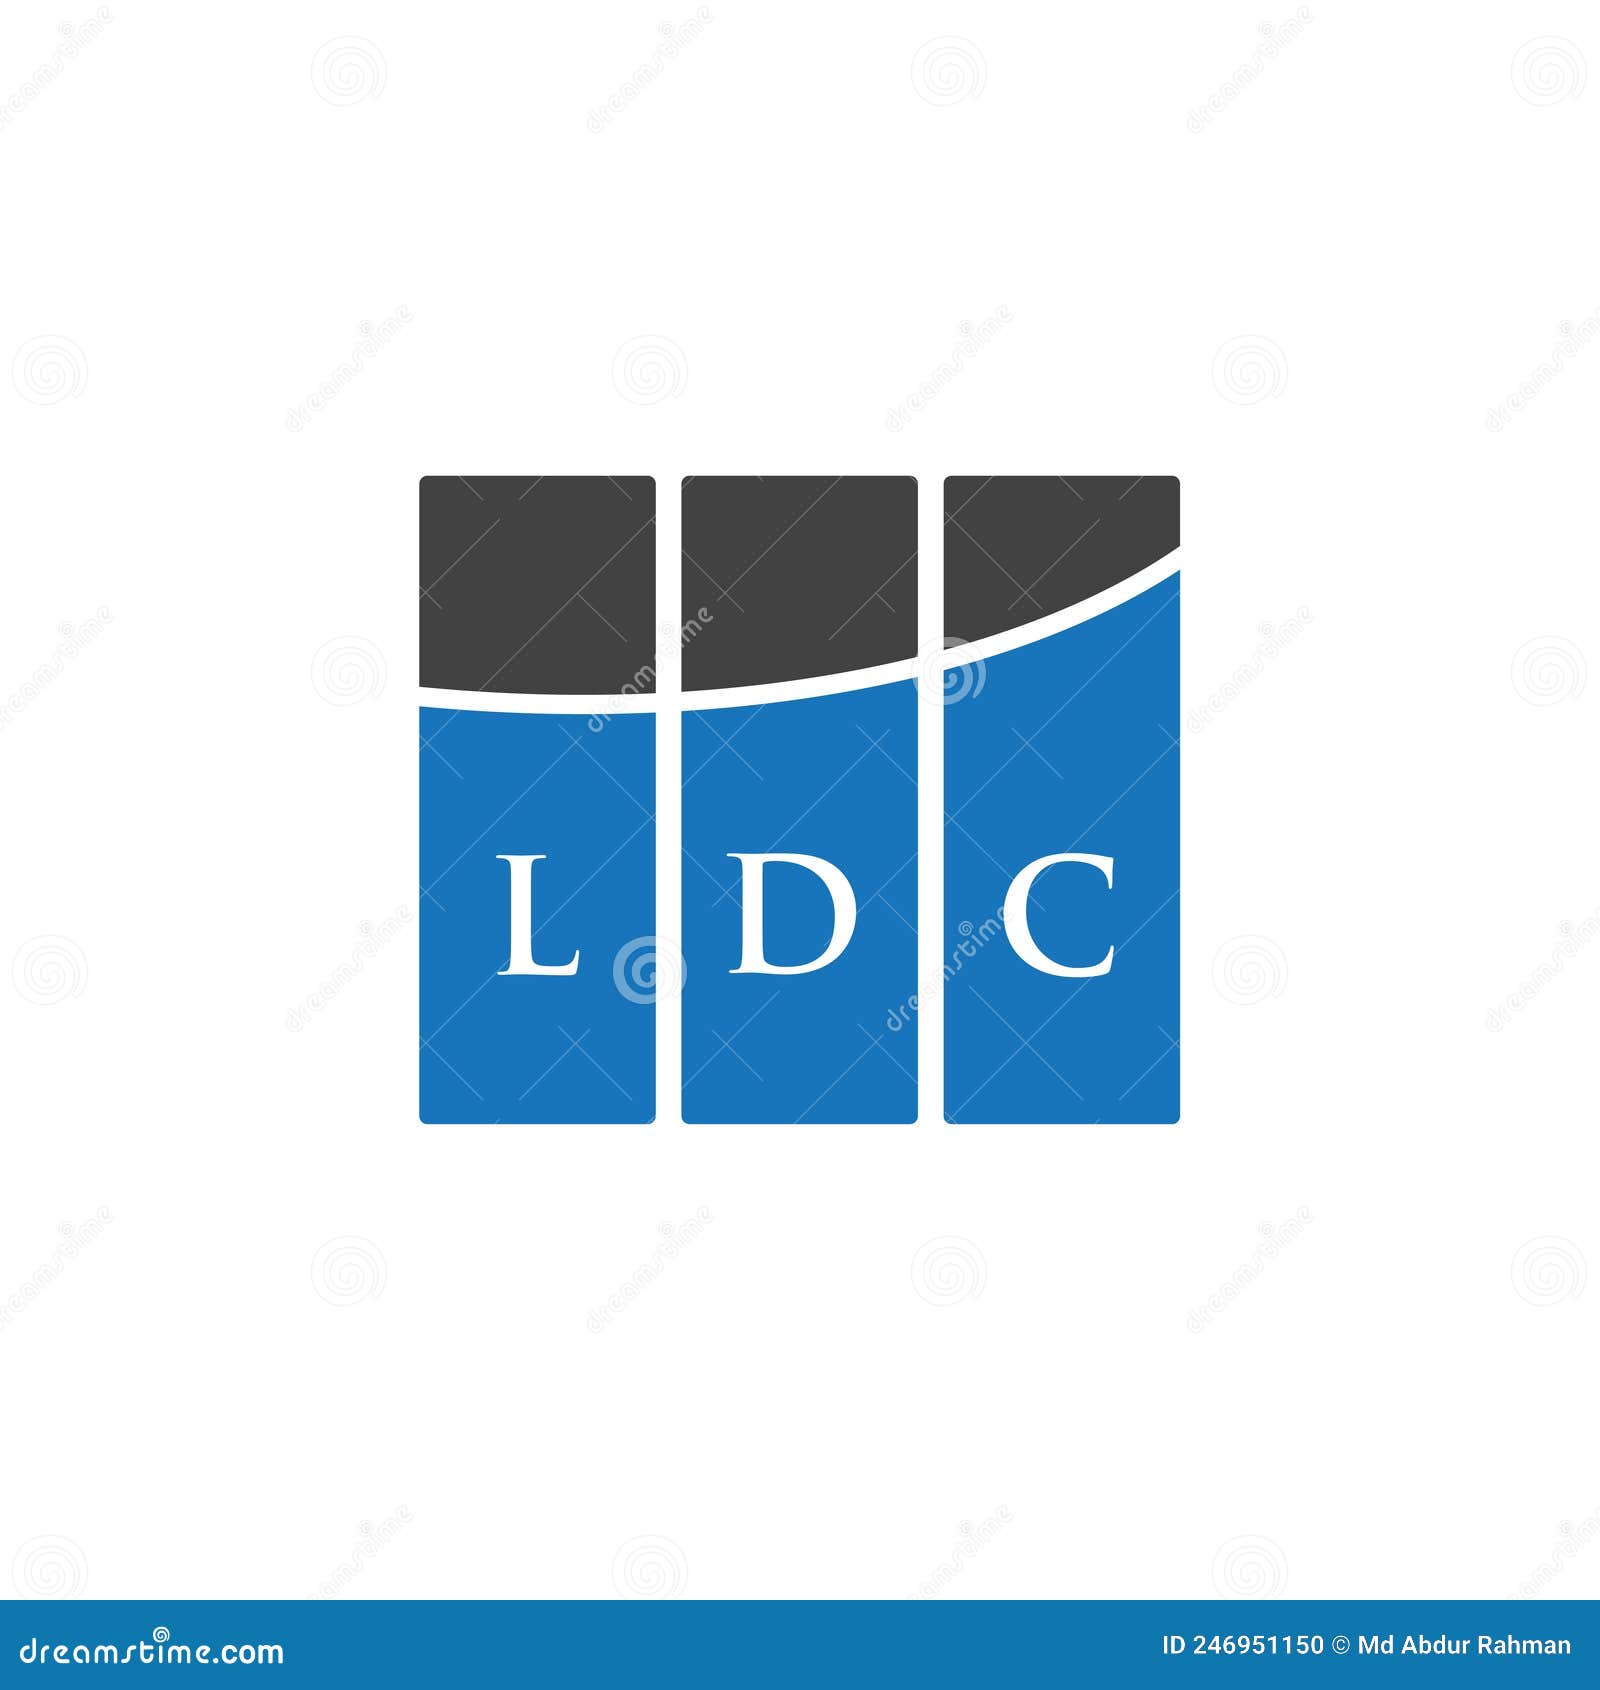 LDC SA: LDC : Chiffre d'affaires du 1er semestre 2022-2023 : +14,2 %. -  MoneyController (ID 869594)